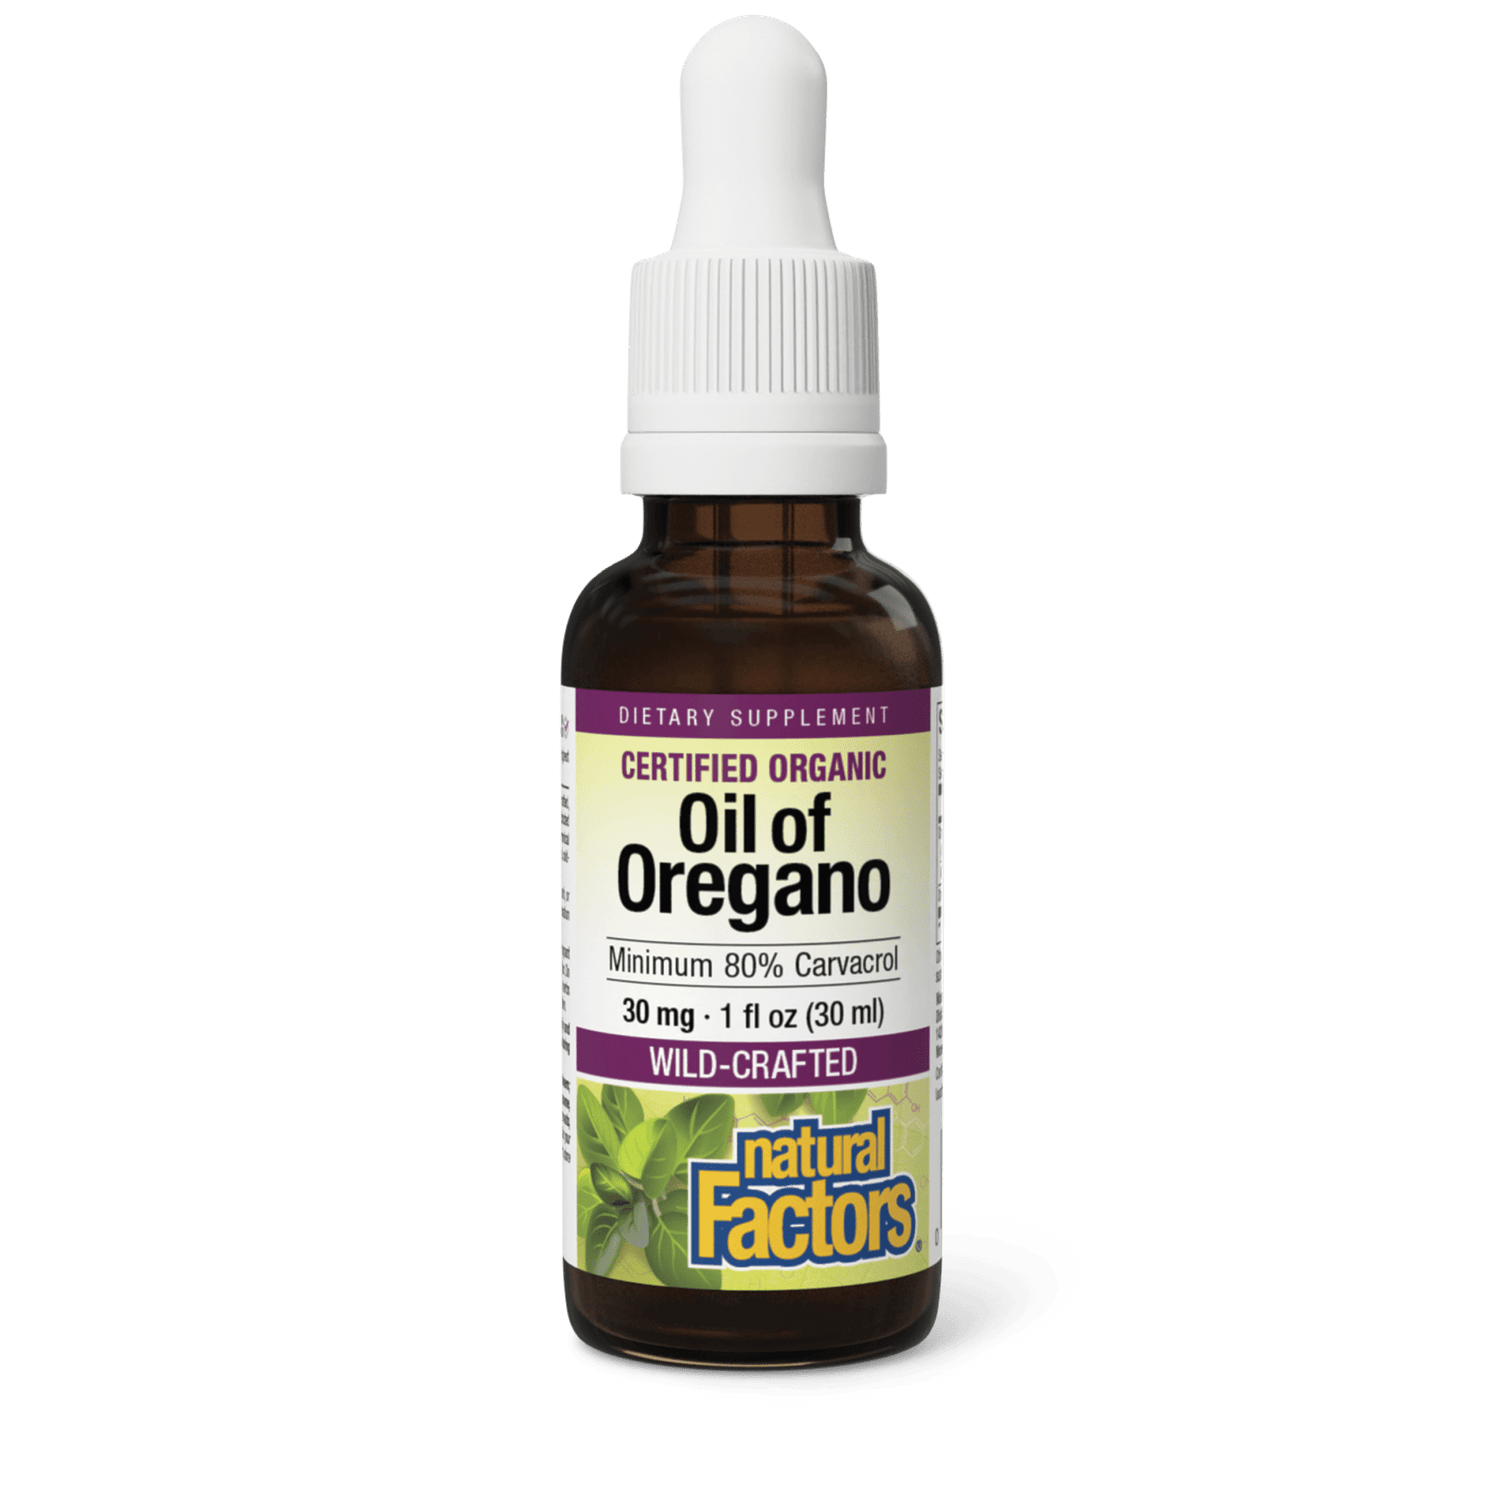 Oil of Oregano 80% Carvacrol Certified Organic|variant|hi-res|4571U